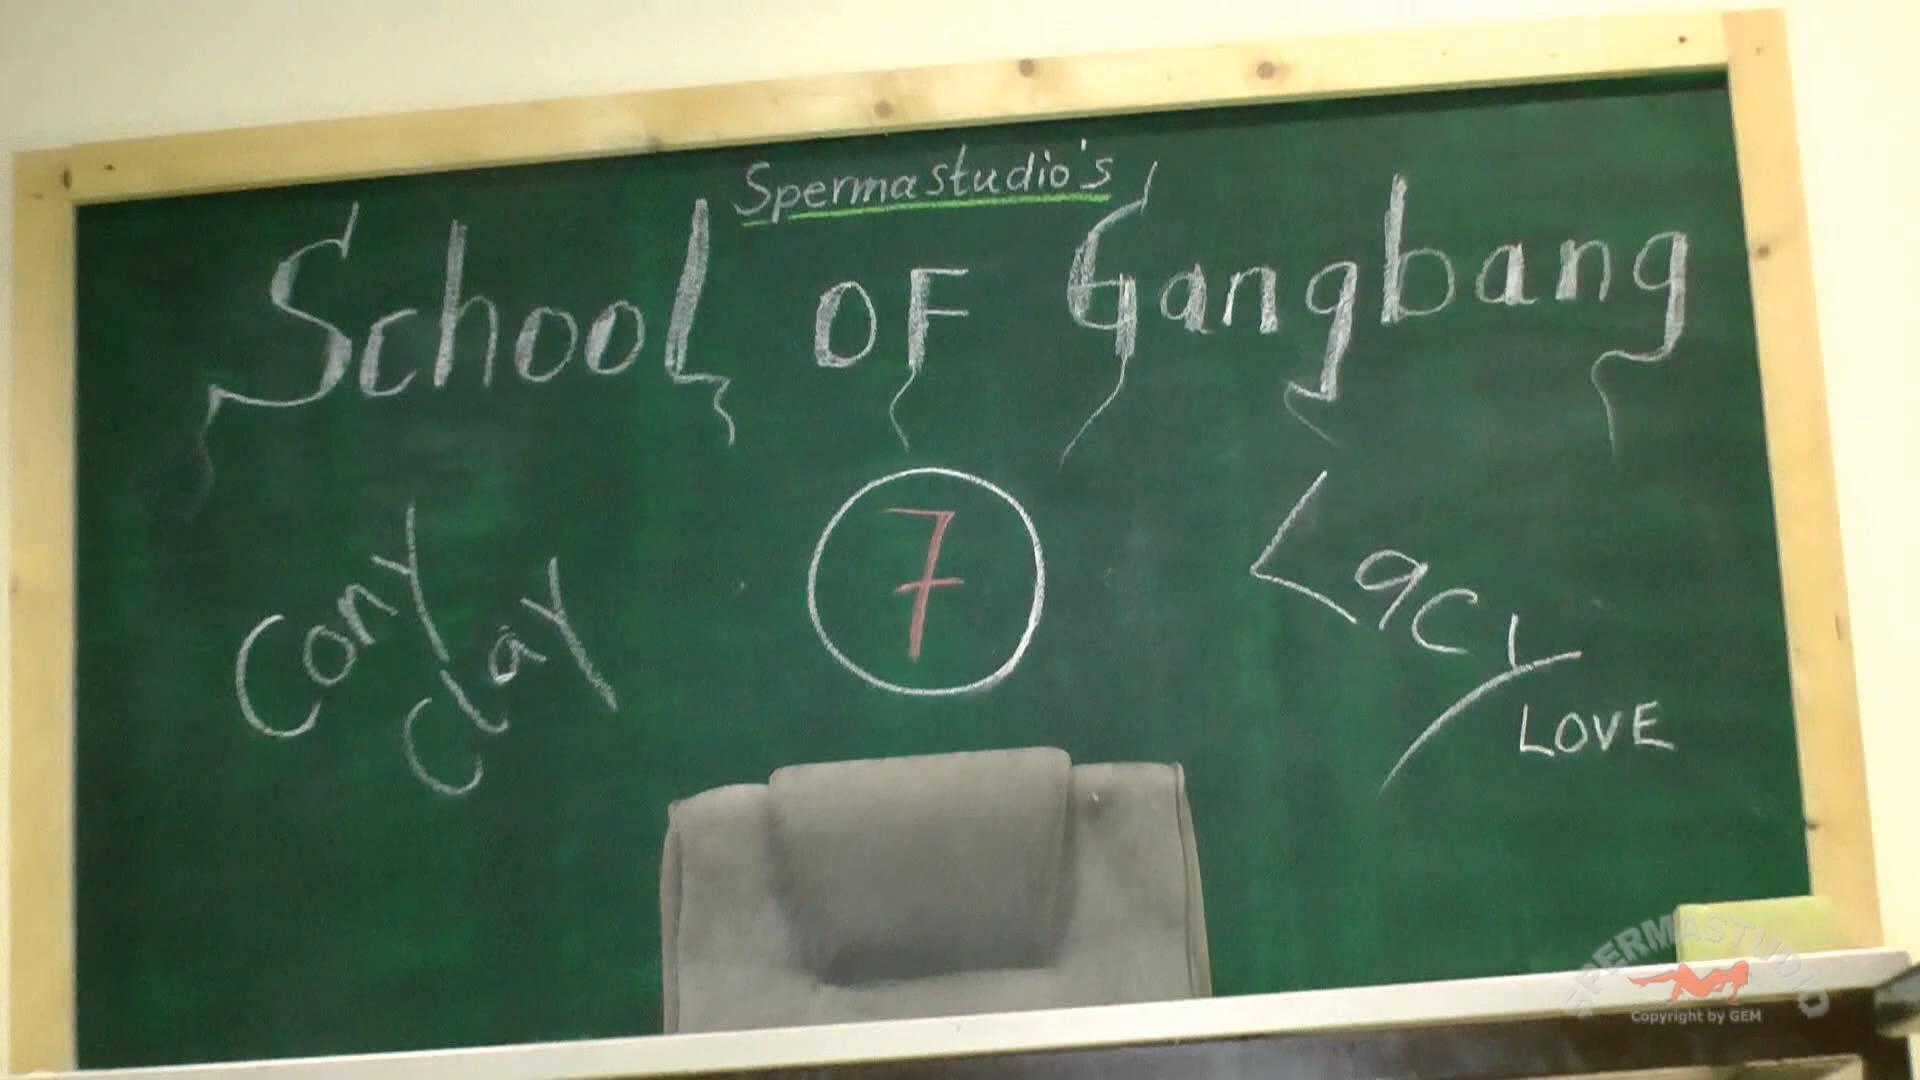 [Sperma-Studio.com / Gem-Film.com] School of Gangbang 7 /  .   7. (Cony Clay & Lacy Love) [2013 ., Blowjobs, Bukkake, Gangbang, Creampie, 1080p, SiteRip]